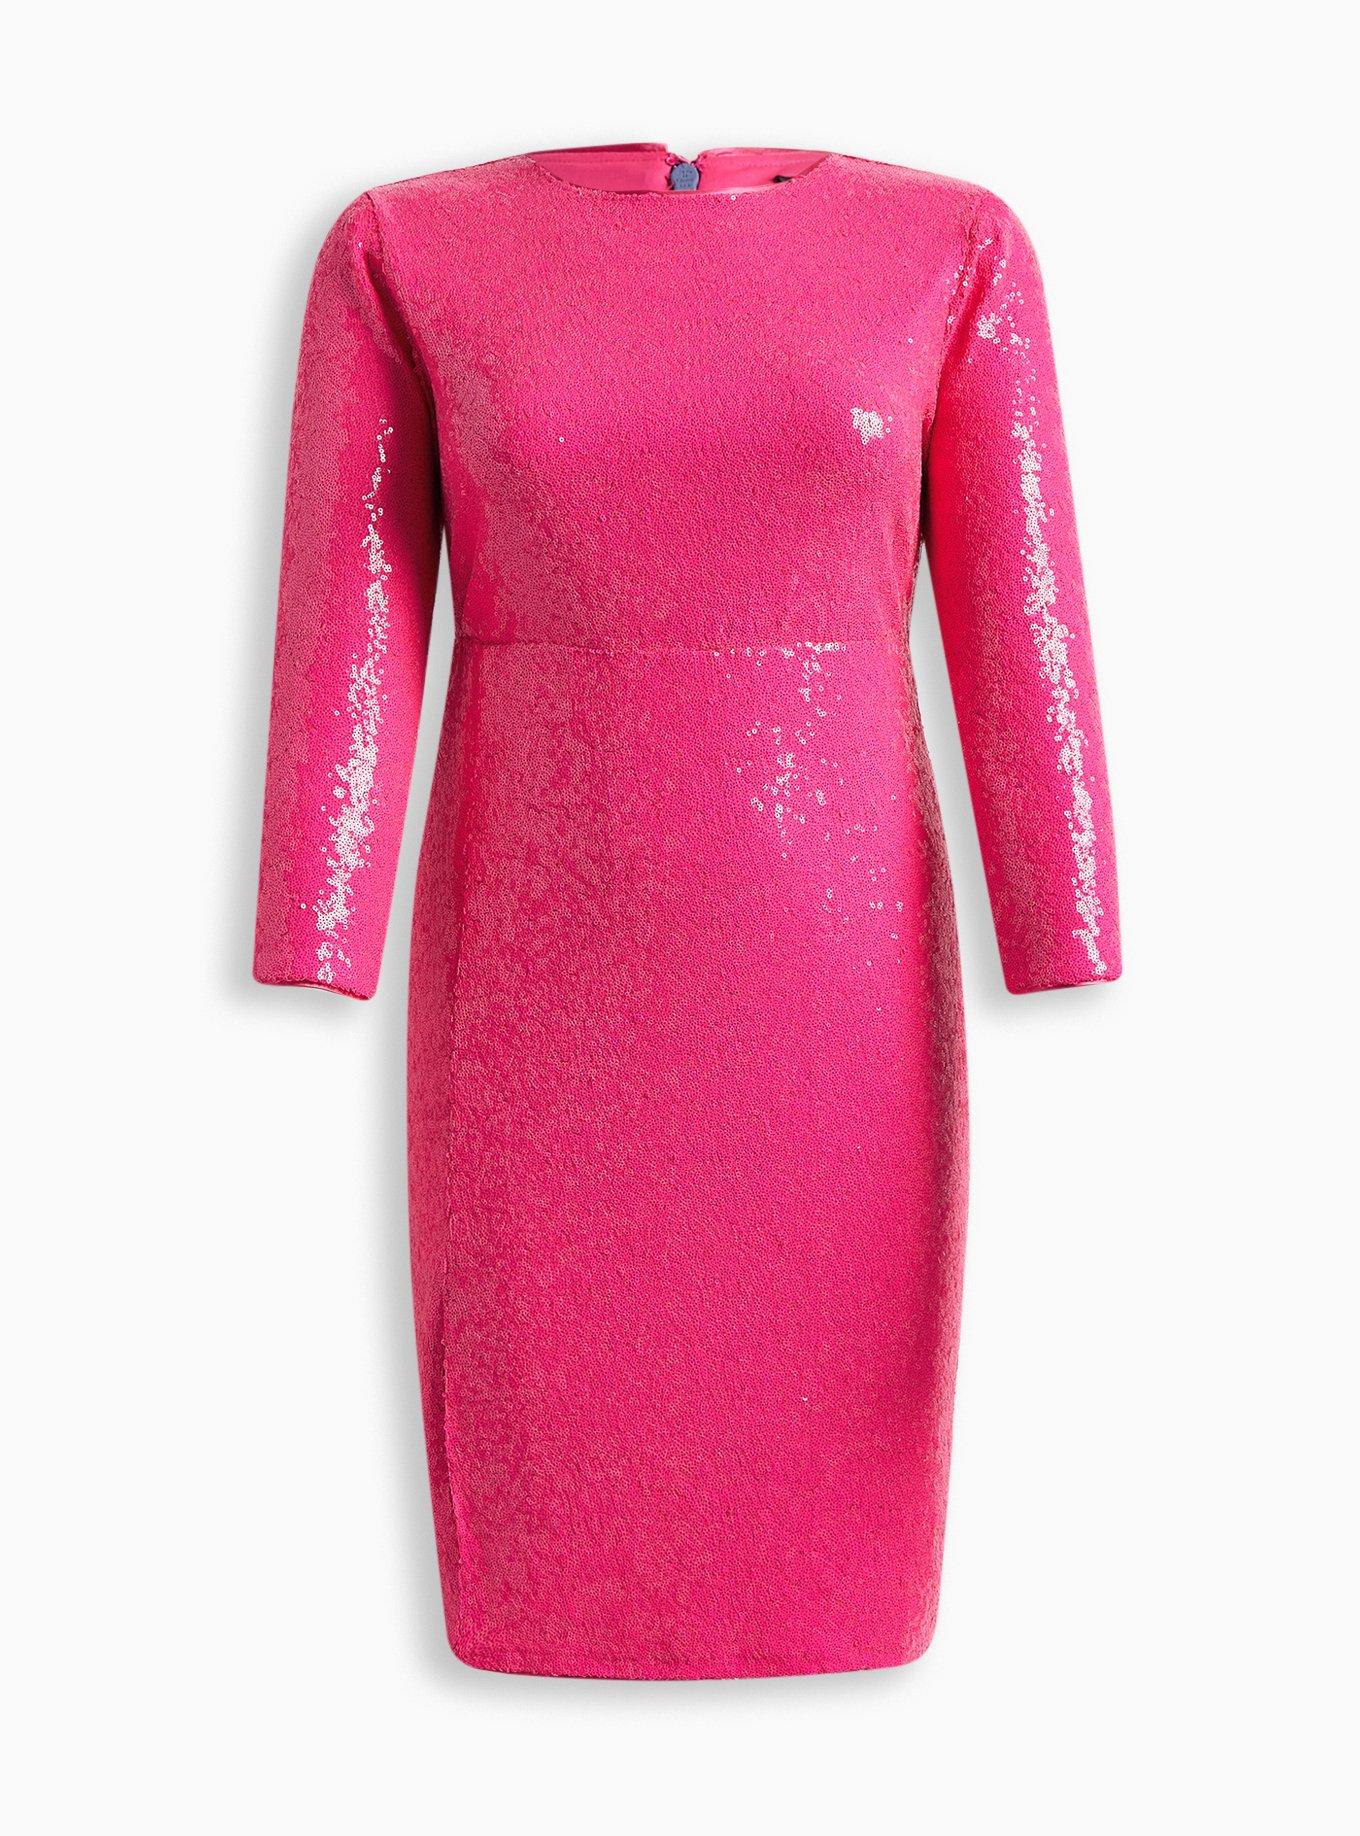 Hot Pink Knit Bell Sleeved Skater Dress, Torrid